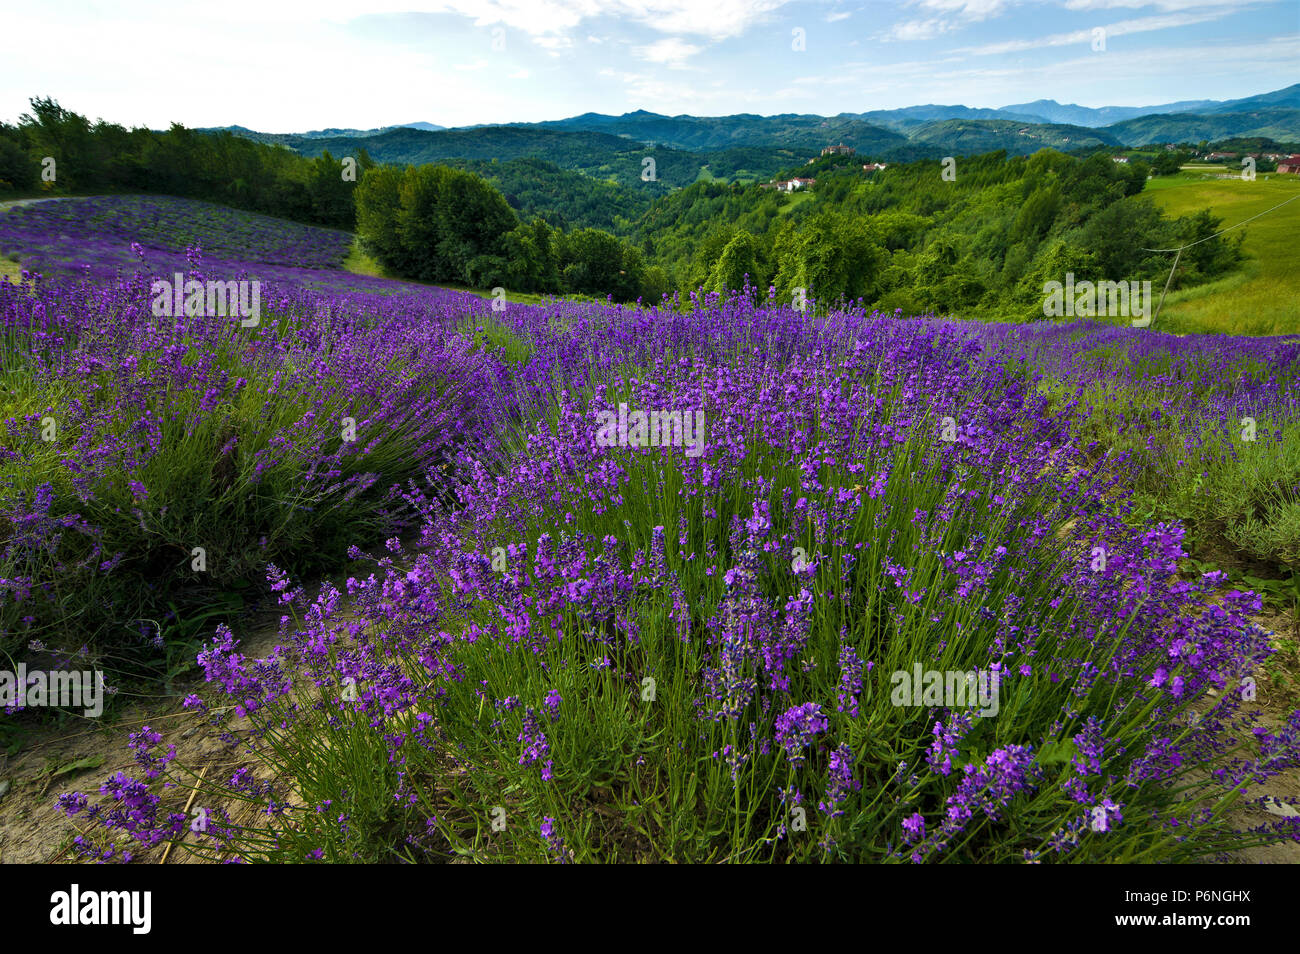 Campo di lavanda in fiore nei pressi del villaggio di Sale San Giovanni,  nelle Langhe, in provincia di Cuneo, Piemonte, a nord-ovest dell'Italia,  dell'Europa Foto stock - Alamy